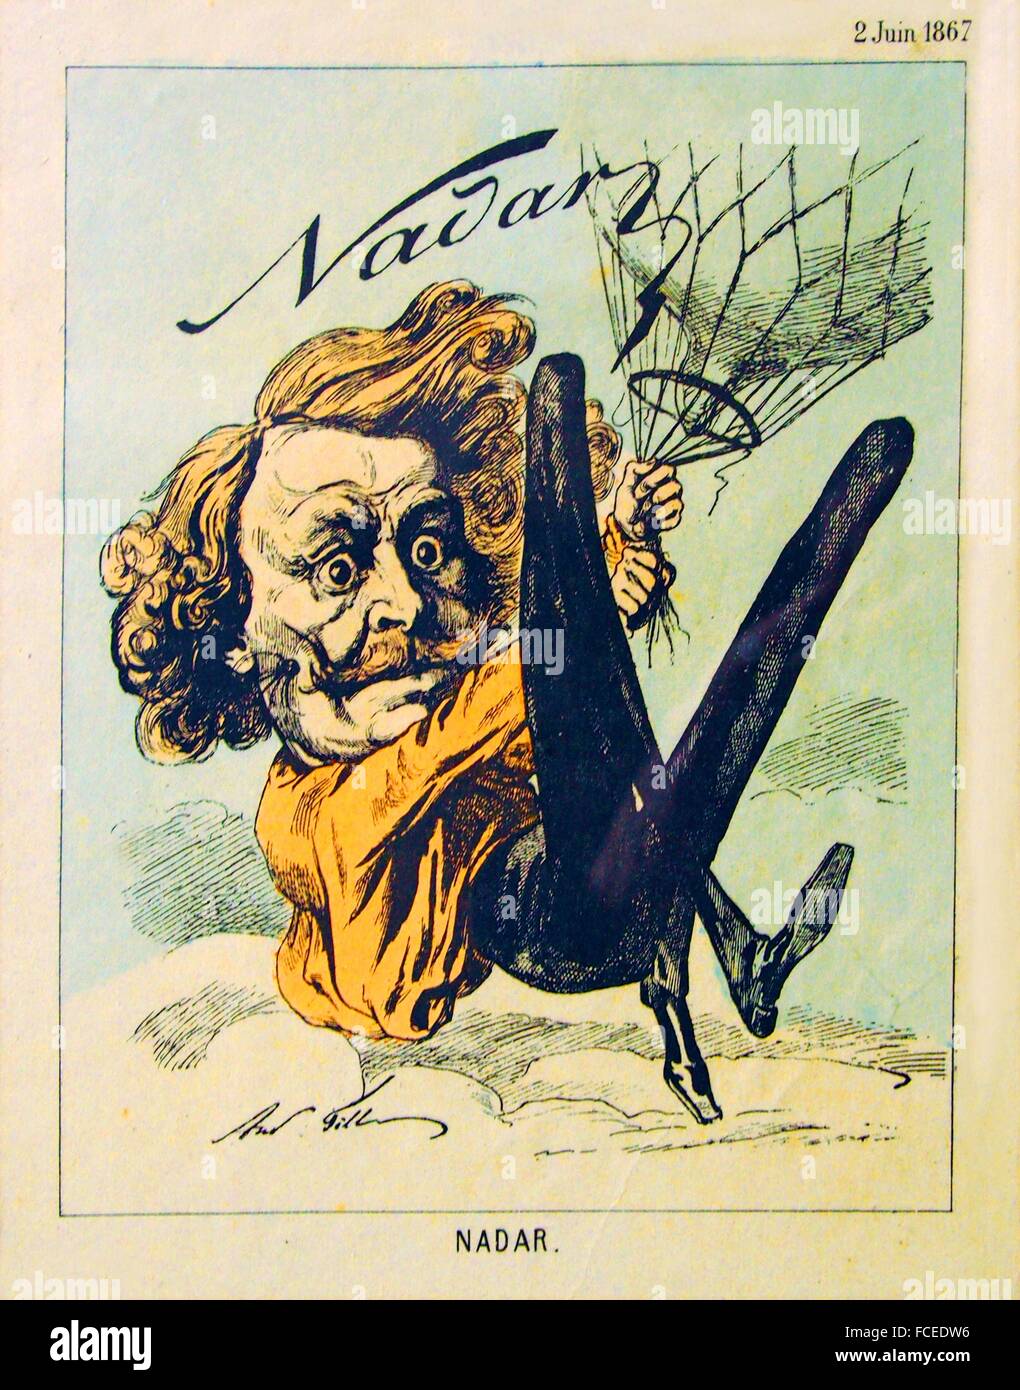 Nadar es el pseudónimo de Gaspard-Félix Tournachon (6 de abril de 1820 - 23  de marzo de 1910), un fotógrafo francés, caricaturista Fotografía de stock  - Alamy